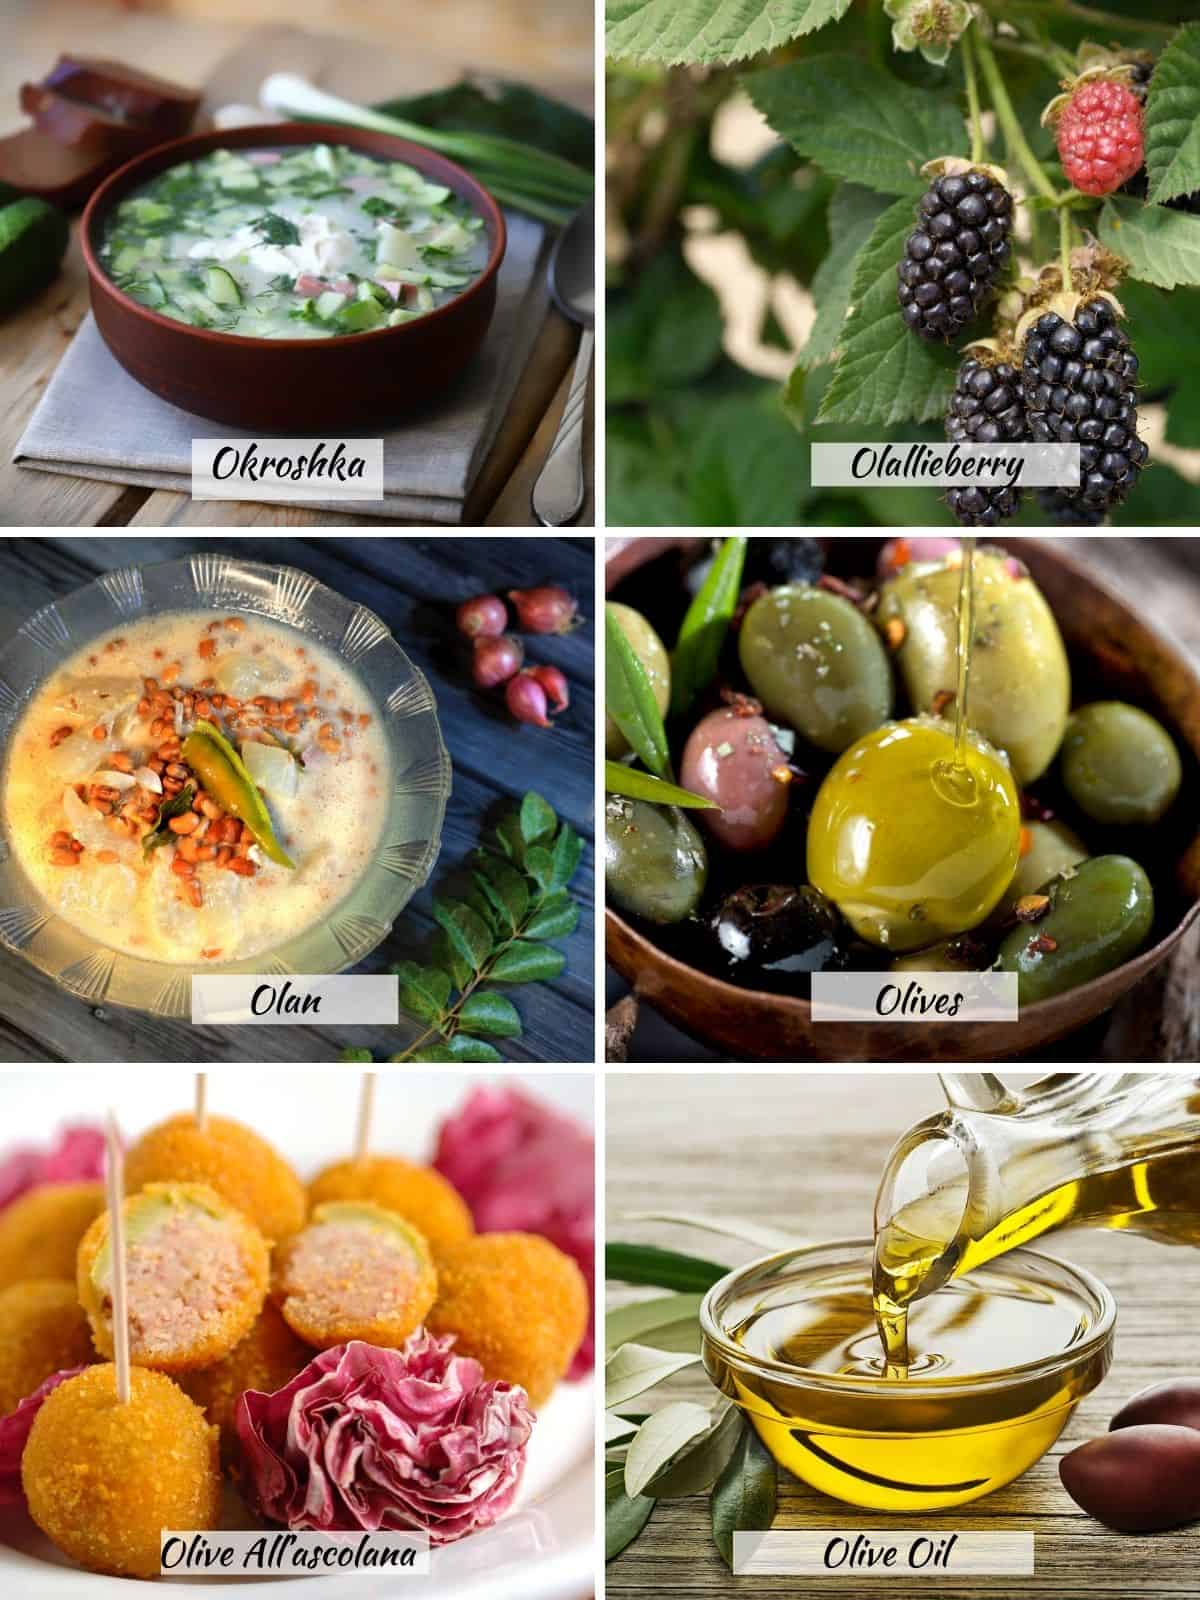 Okroshka, olallieberry, olan, olives, olive all'sdcolona, olive oil.